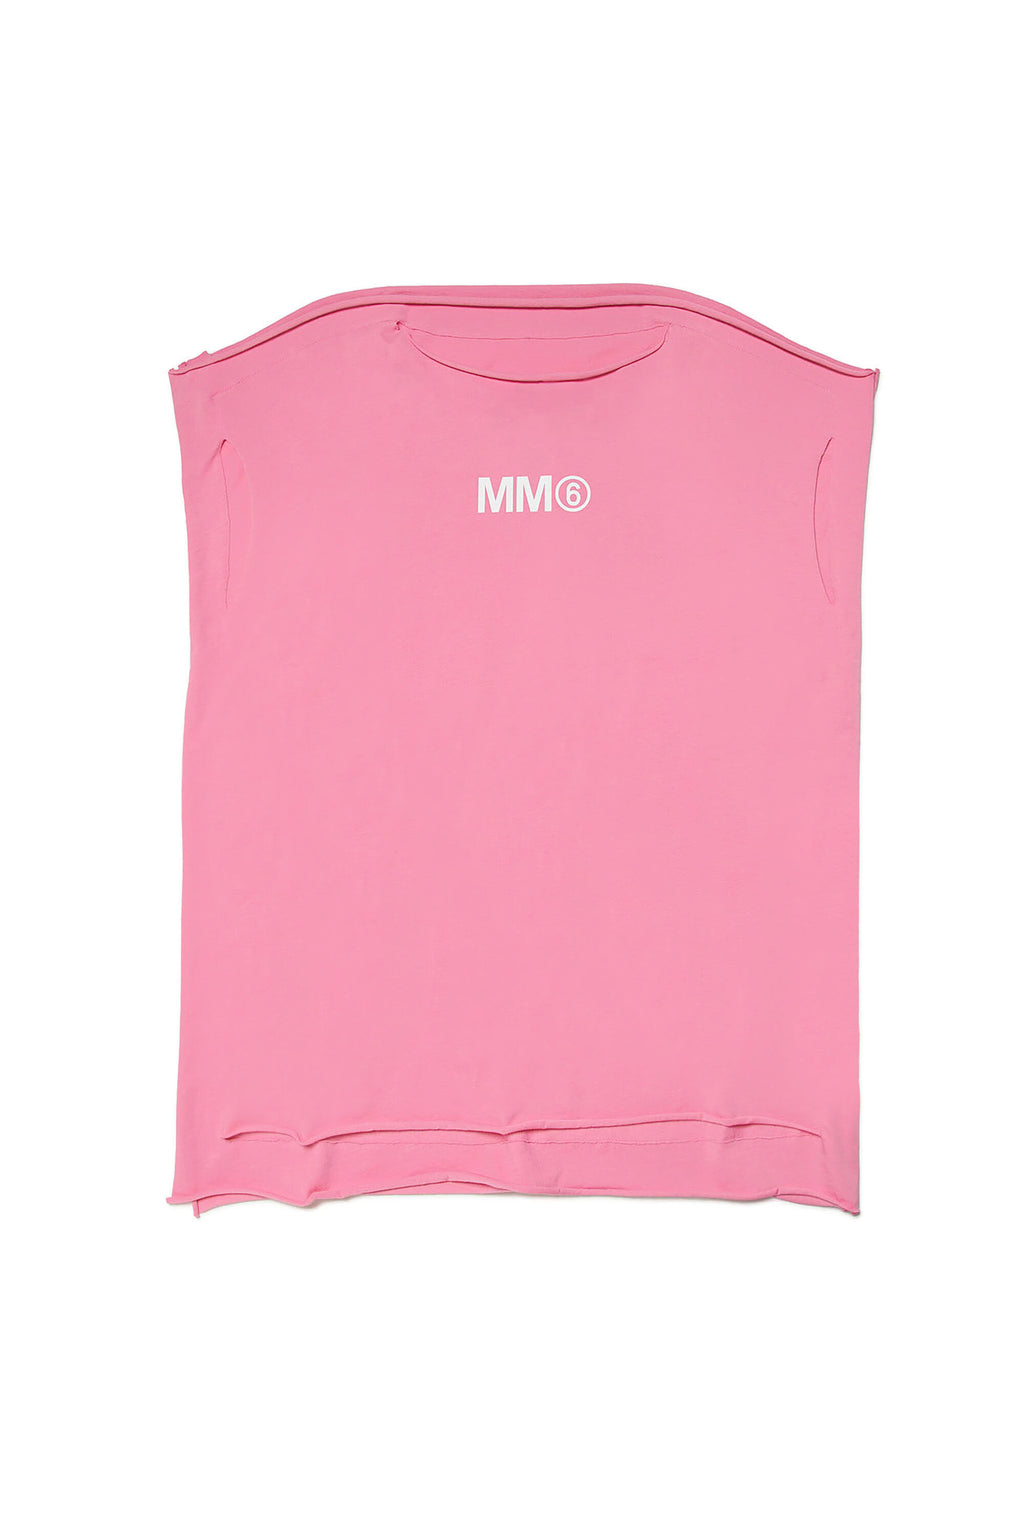 MM6 branded sleeveless cover-up dress